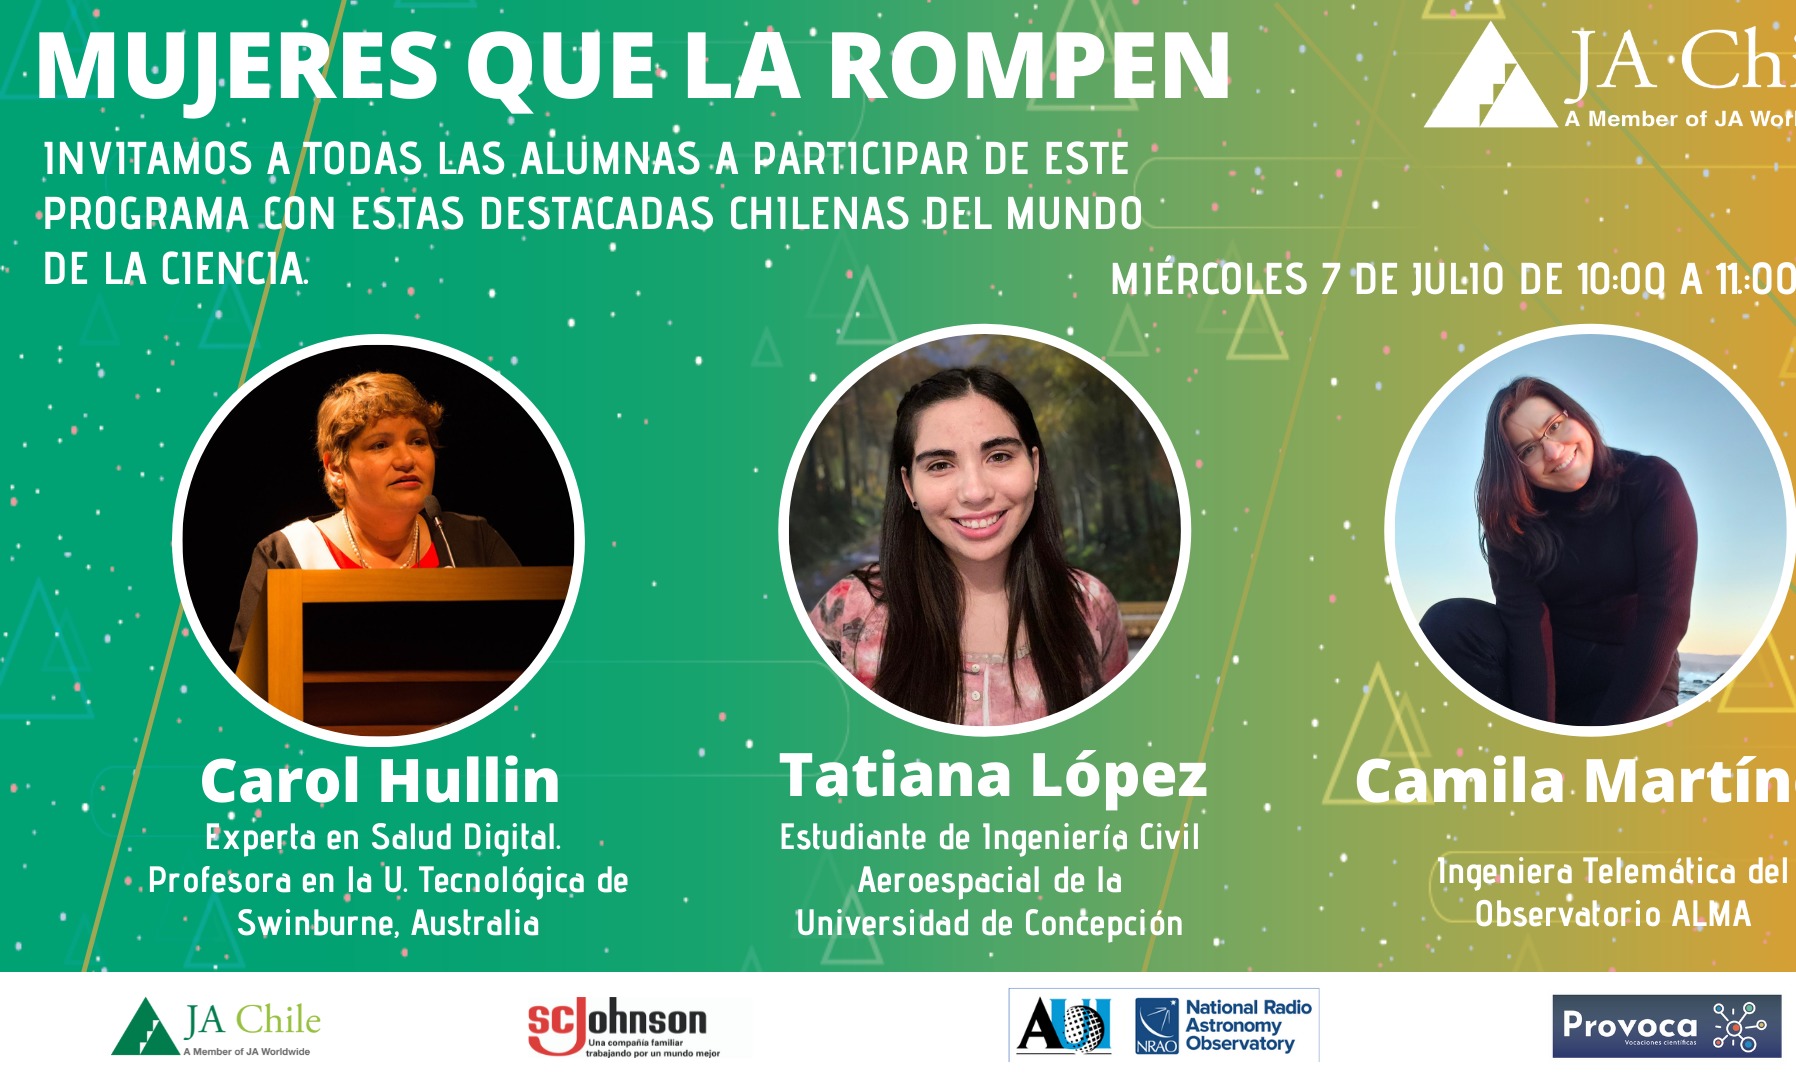 "Mujeres que la rompen" reunirá a chilenas destacadas en STEM